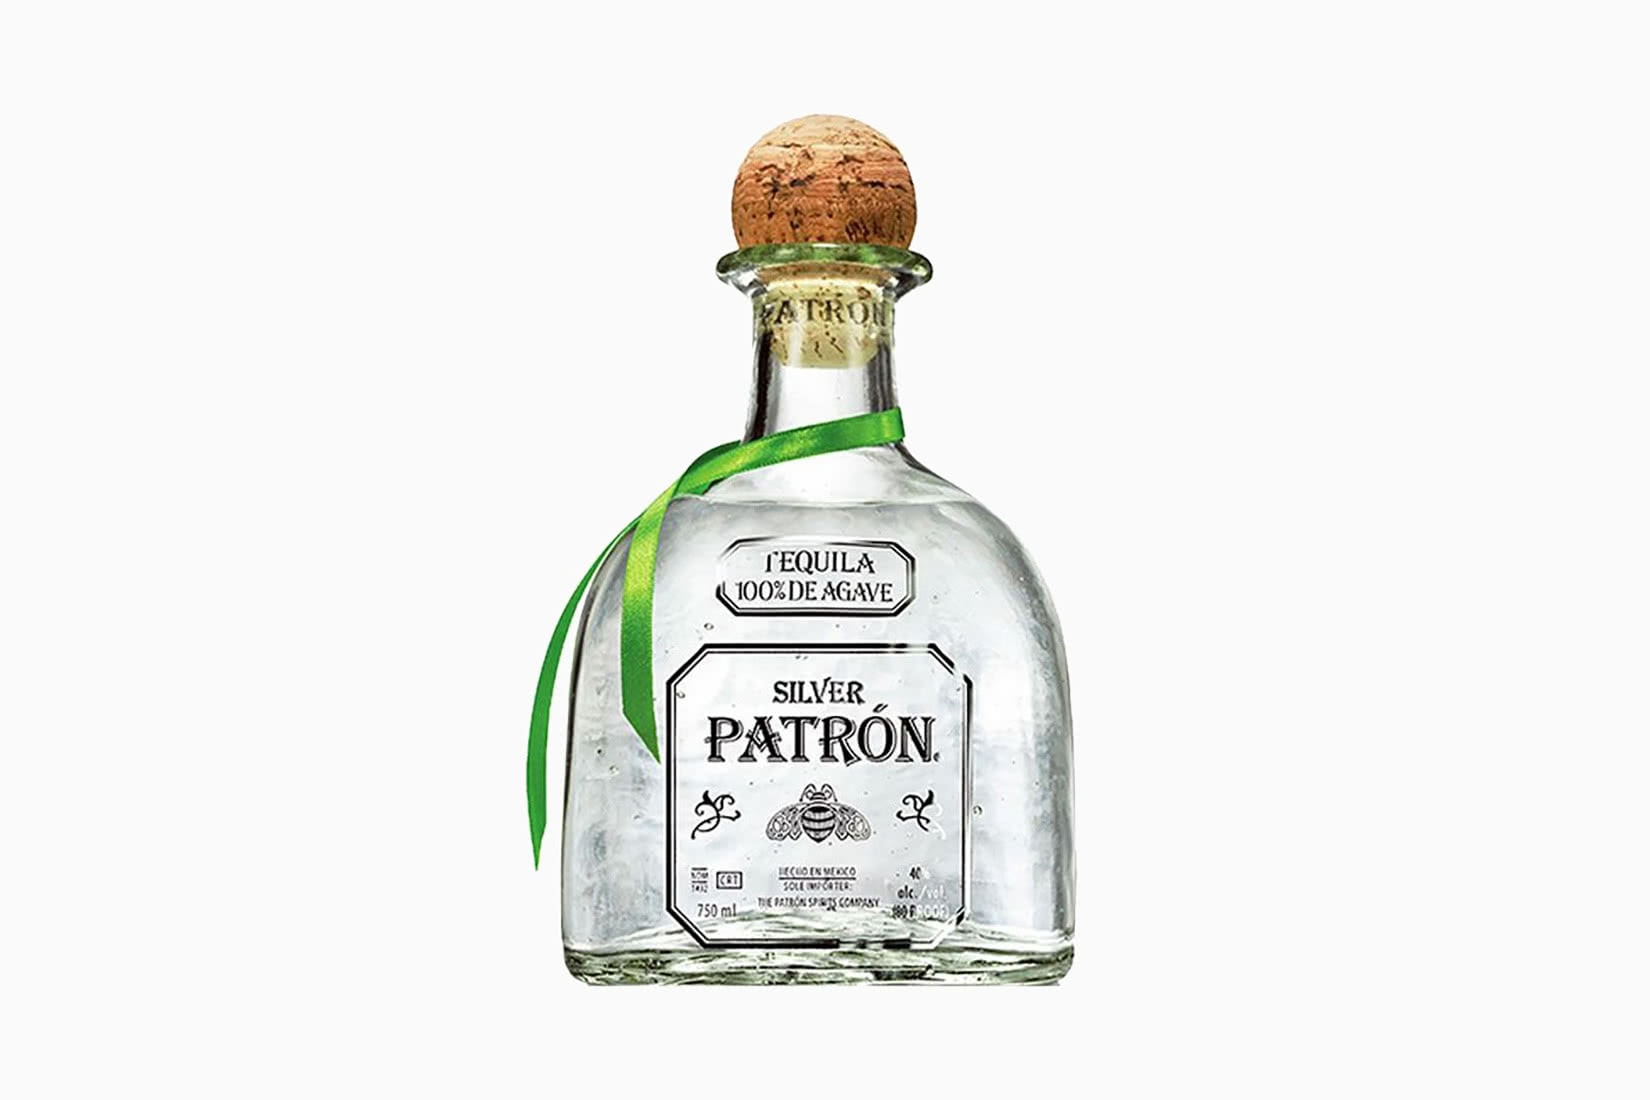 patron Tequila silver bottle ár méret - Luxe Digital